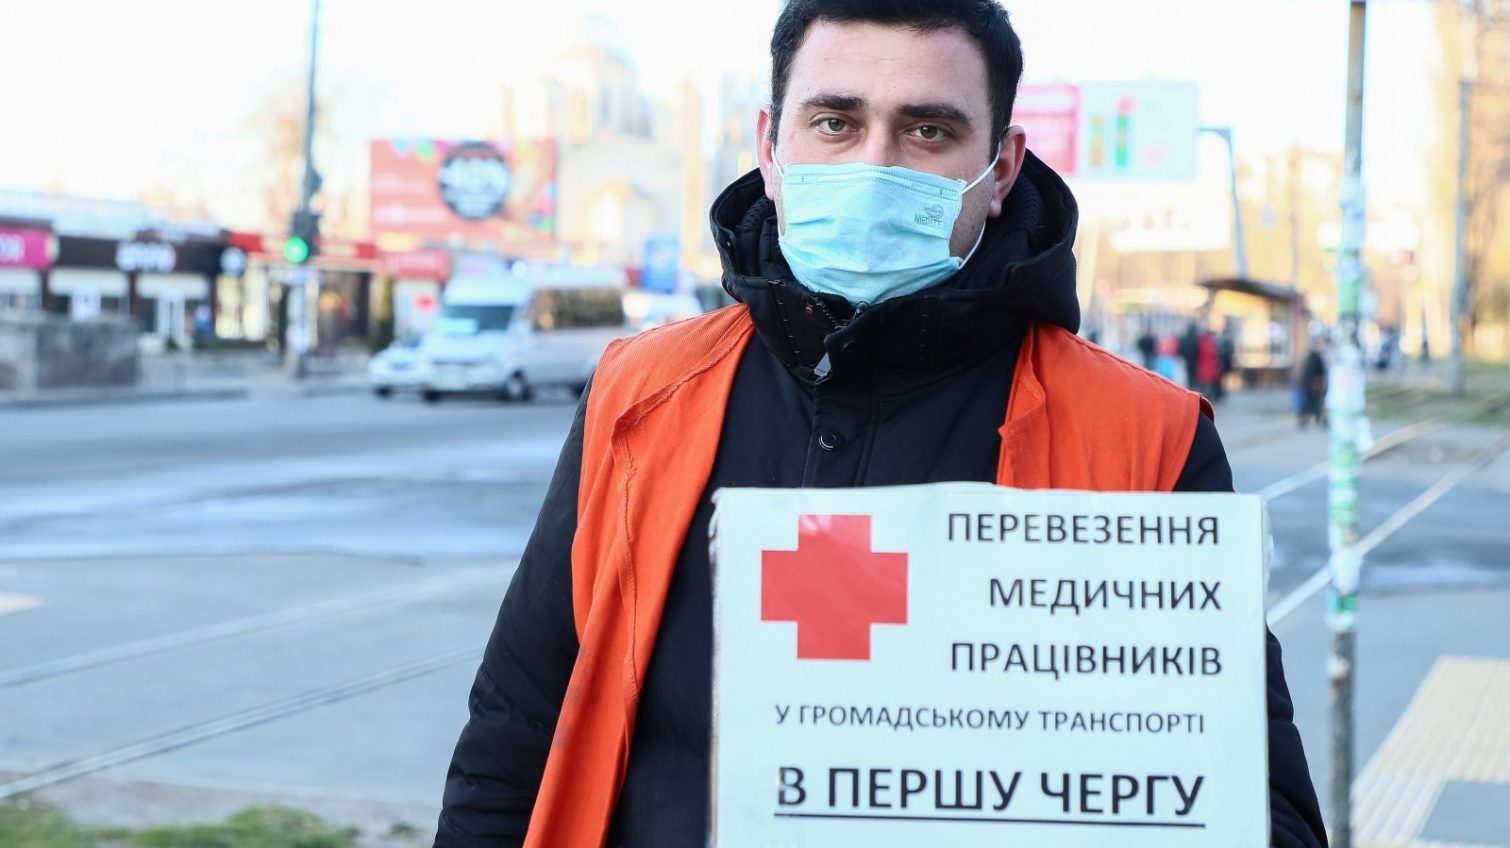 В Одессе расширят маршрутную сеть и организуют доставку медиков из области «фото»